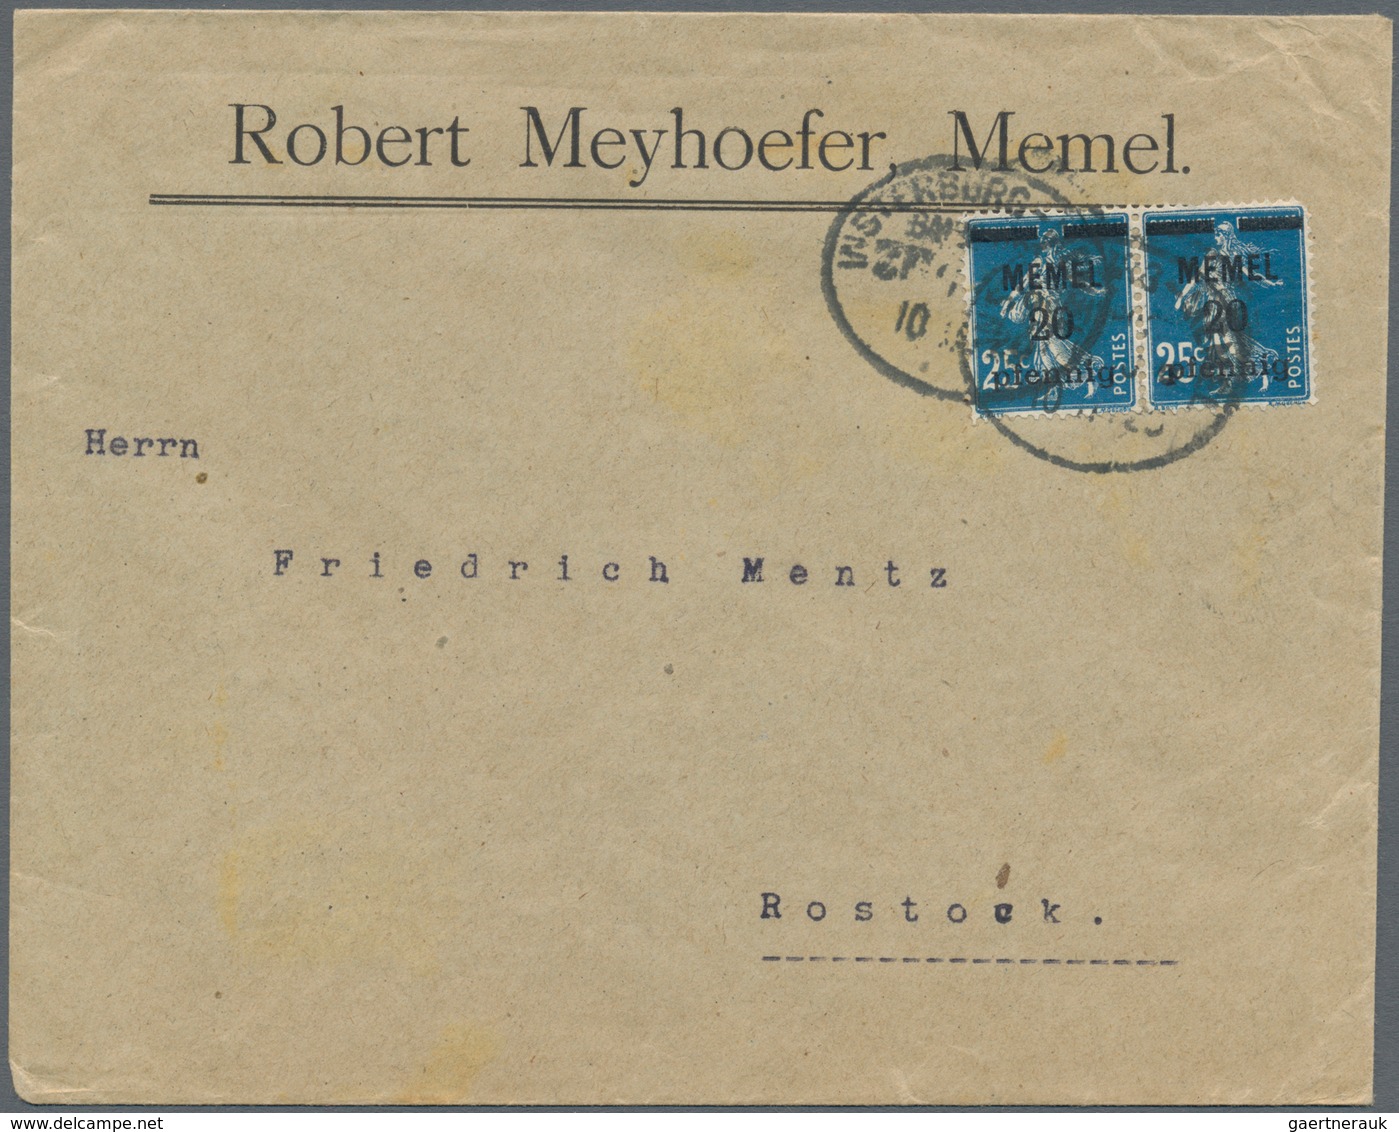 Deutsches Reich - Bahnpost: 1872/1942 ca., reichhaltiger Sammlungsbestand mit ca.90 Briefen, Karten